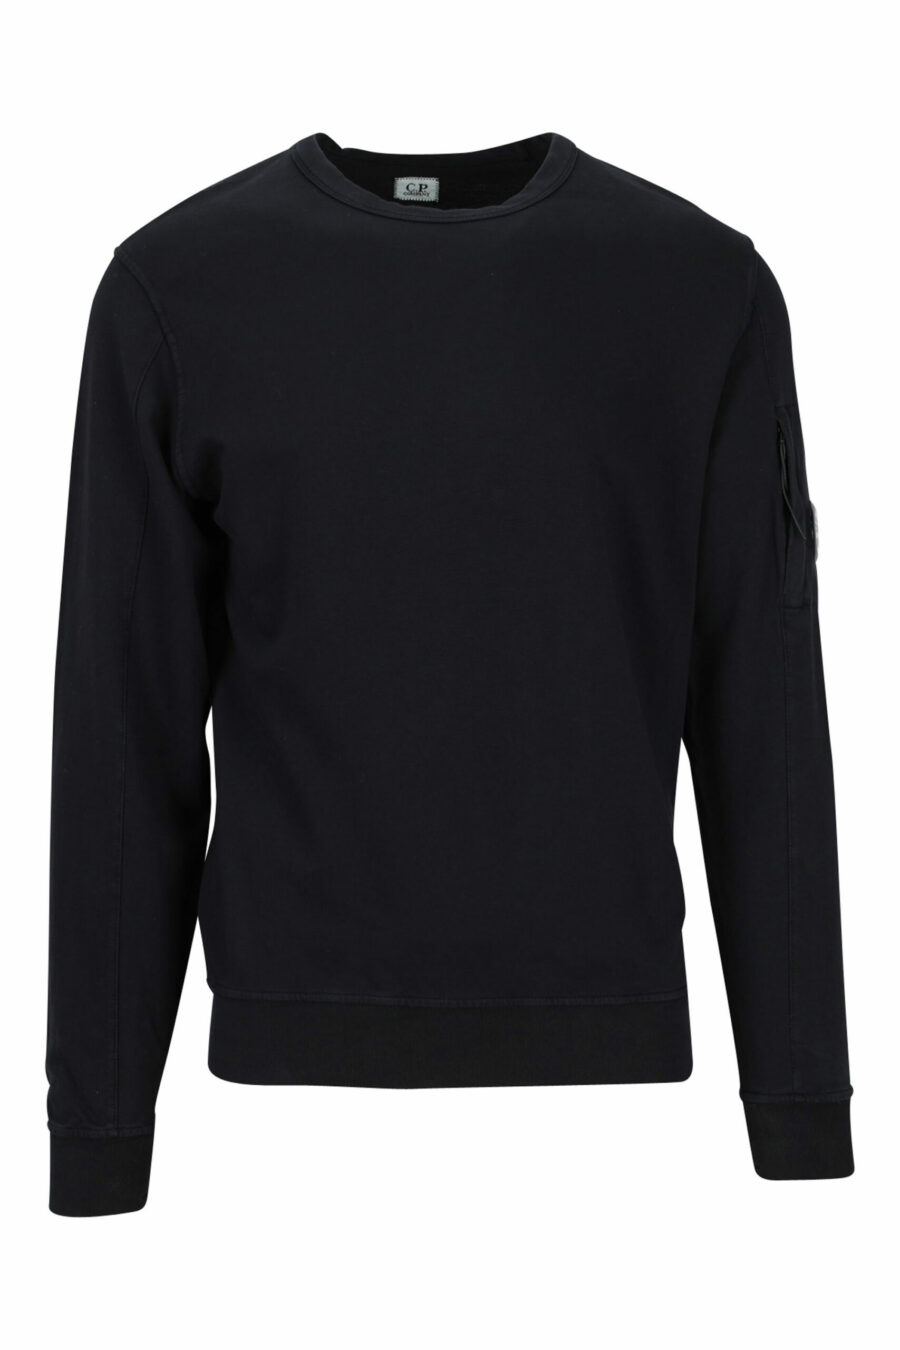 Schwarzes Sweatshirt mit seitlicher Linse minilogue - 7620943592191 skaliert